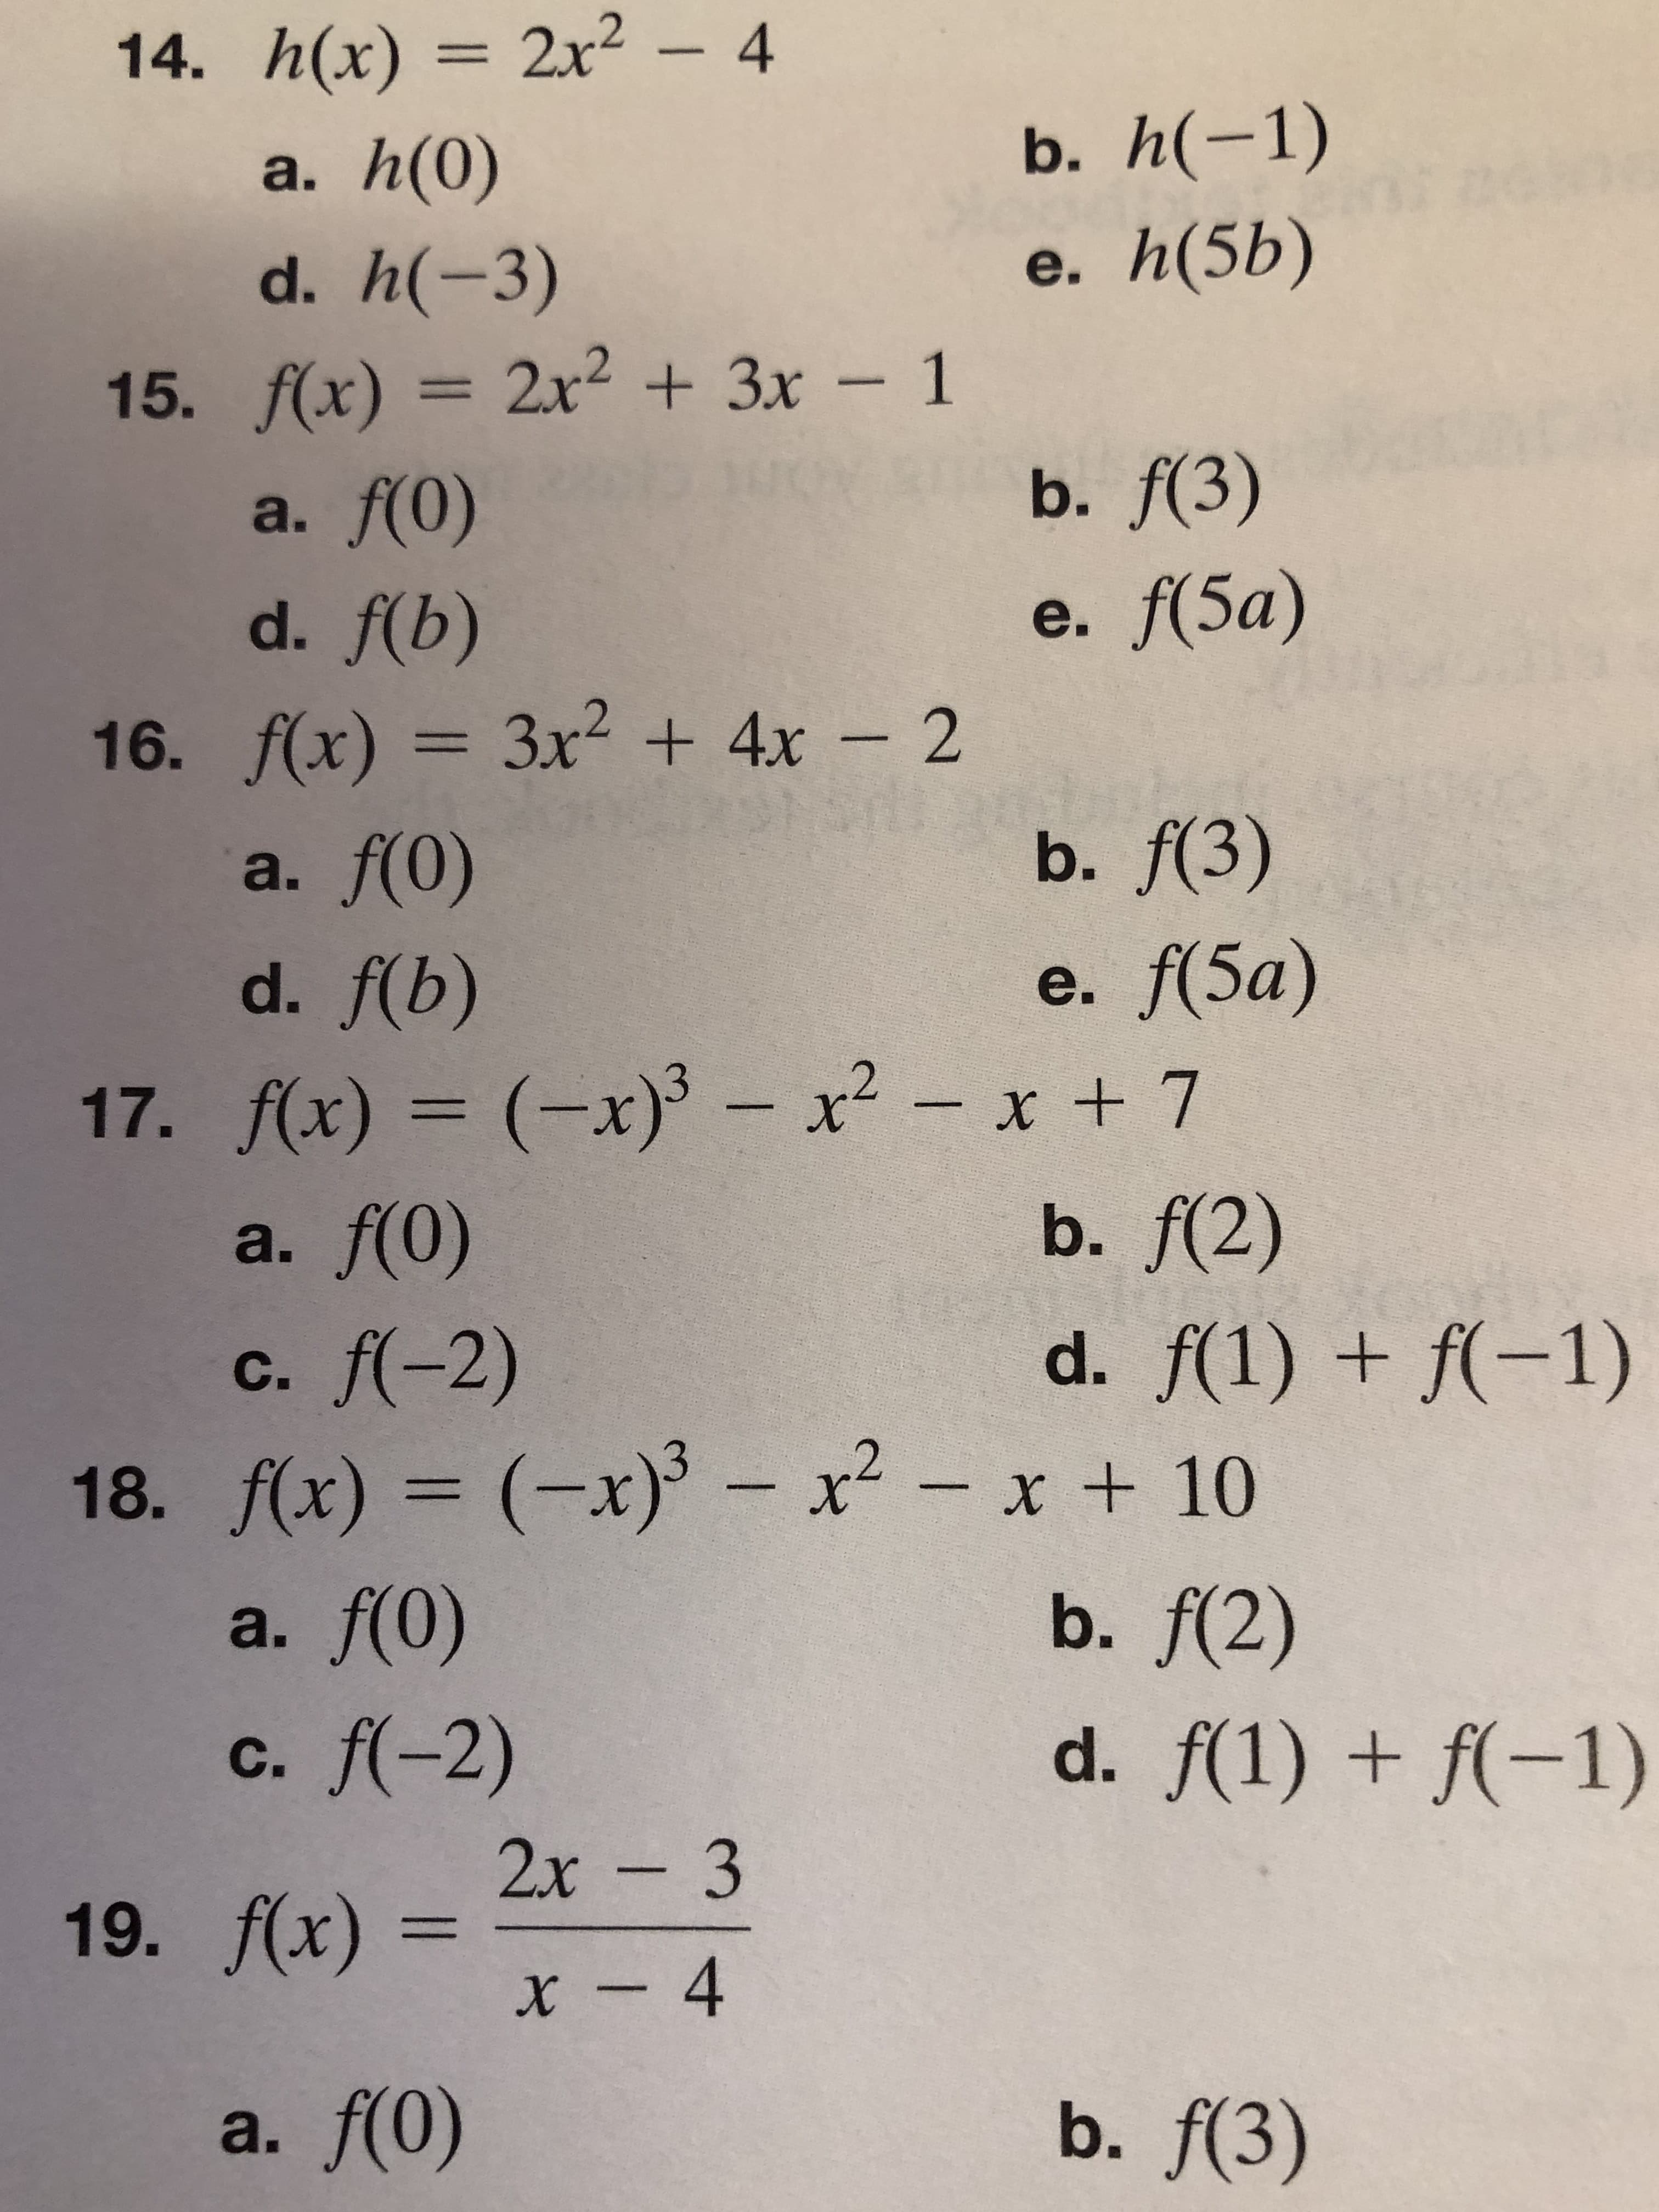 14. h(x) 2x2 - 4
b. h(-1)
a. h(0)
d. h(-3)
e. h(5b)
2x23x- 1
15. f(x) = 2x2 3x - 1
b. f(3)
a. f(0)
e. f(5а)
d. f(b)
16. f(x) 3x2 + 4x 2
b. f(3)
a. f(0)
e. f(5а)
d. f(b)
17. f(x) (x) x2-x + 7
a. f(0)
x x + 7
b. f(2)
d. f(1)f(-1)
c. f(-2)
- x2 -
18. f(x) (x)
a. f(0)
x +10
b. f(2)
d. f(1)f(-1)
c. f(-2)
2х - 3
19. f(x)x- 4
b. f(3)
a. f(0)
